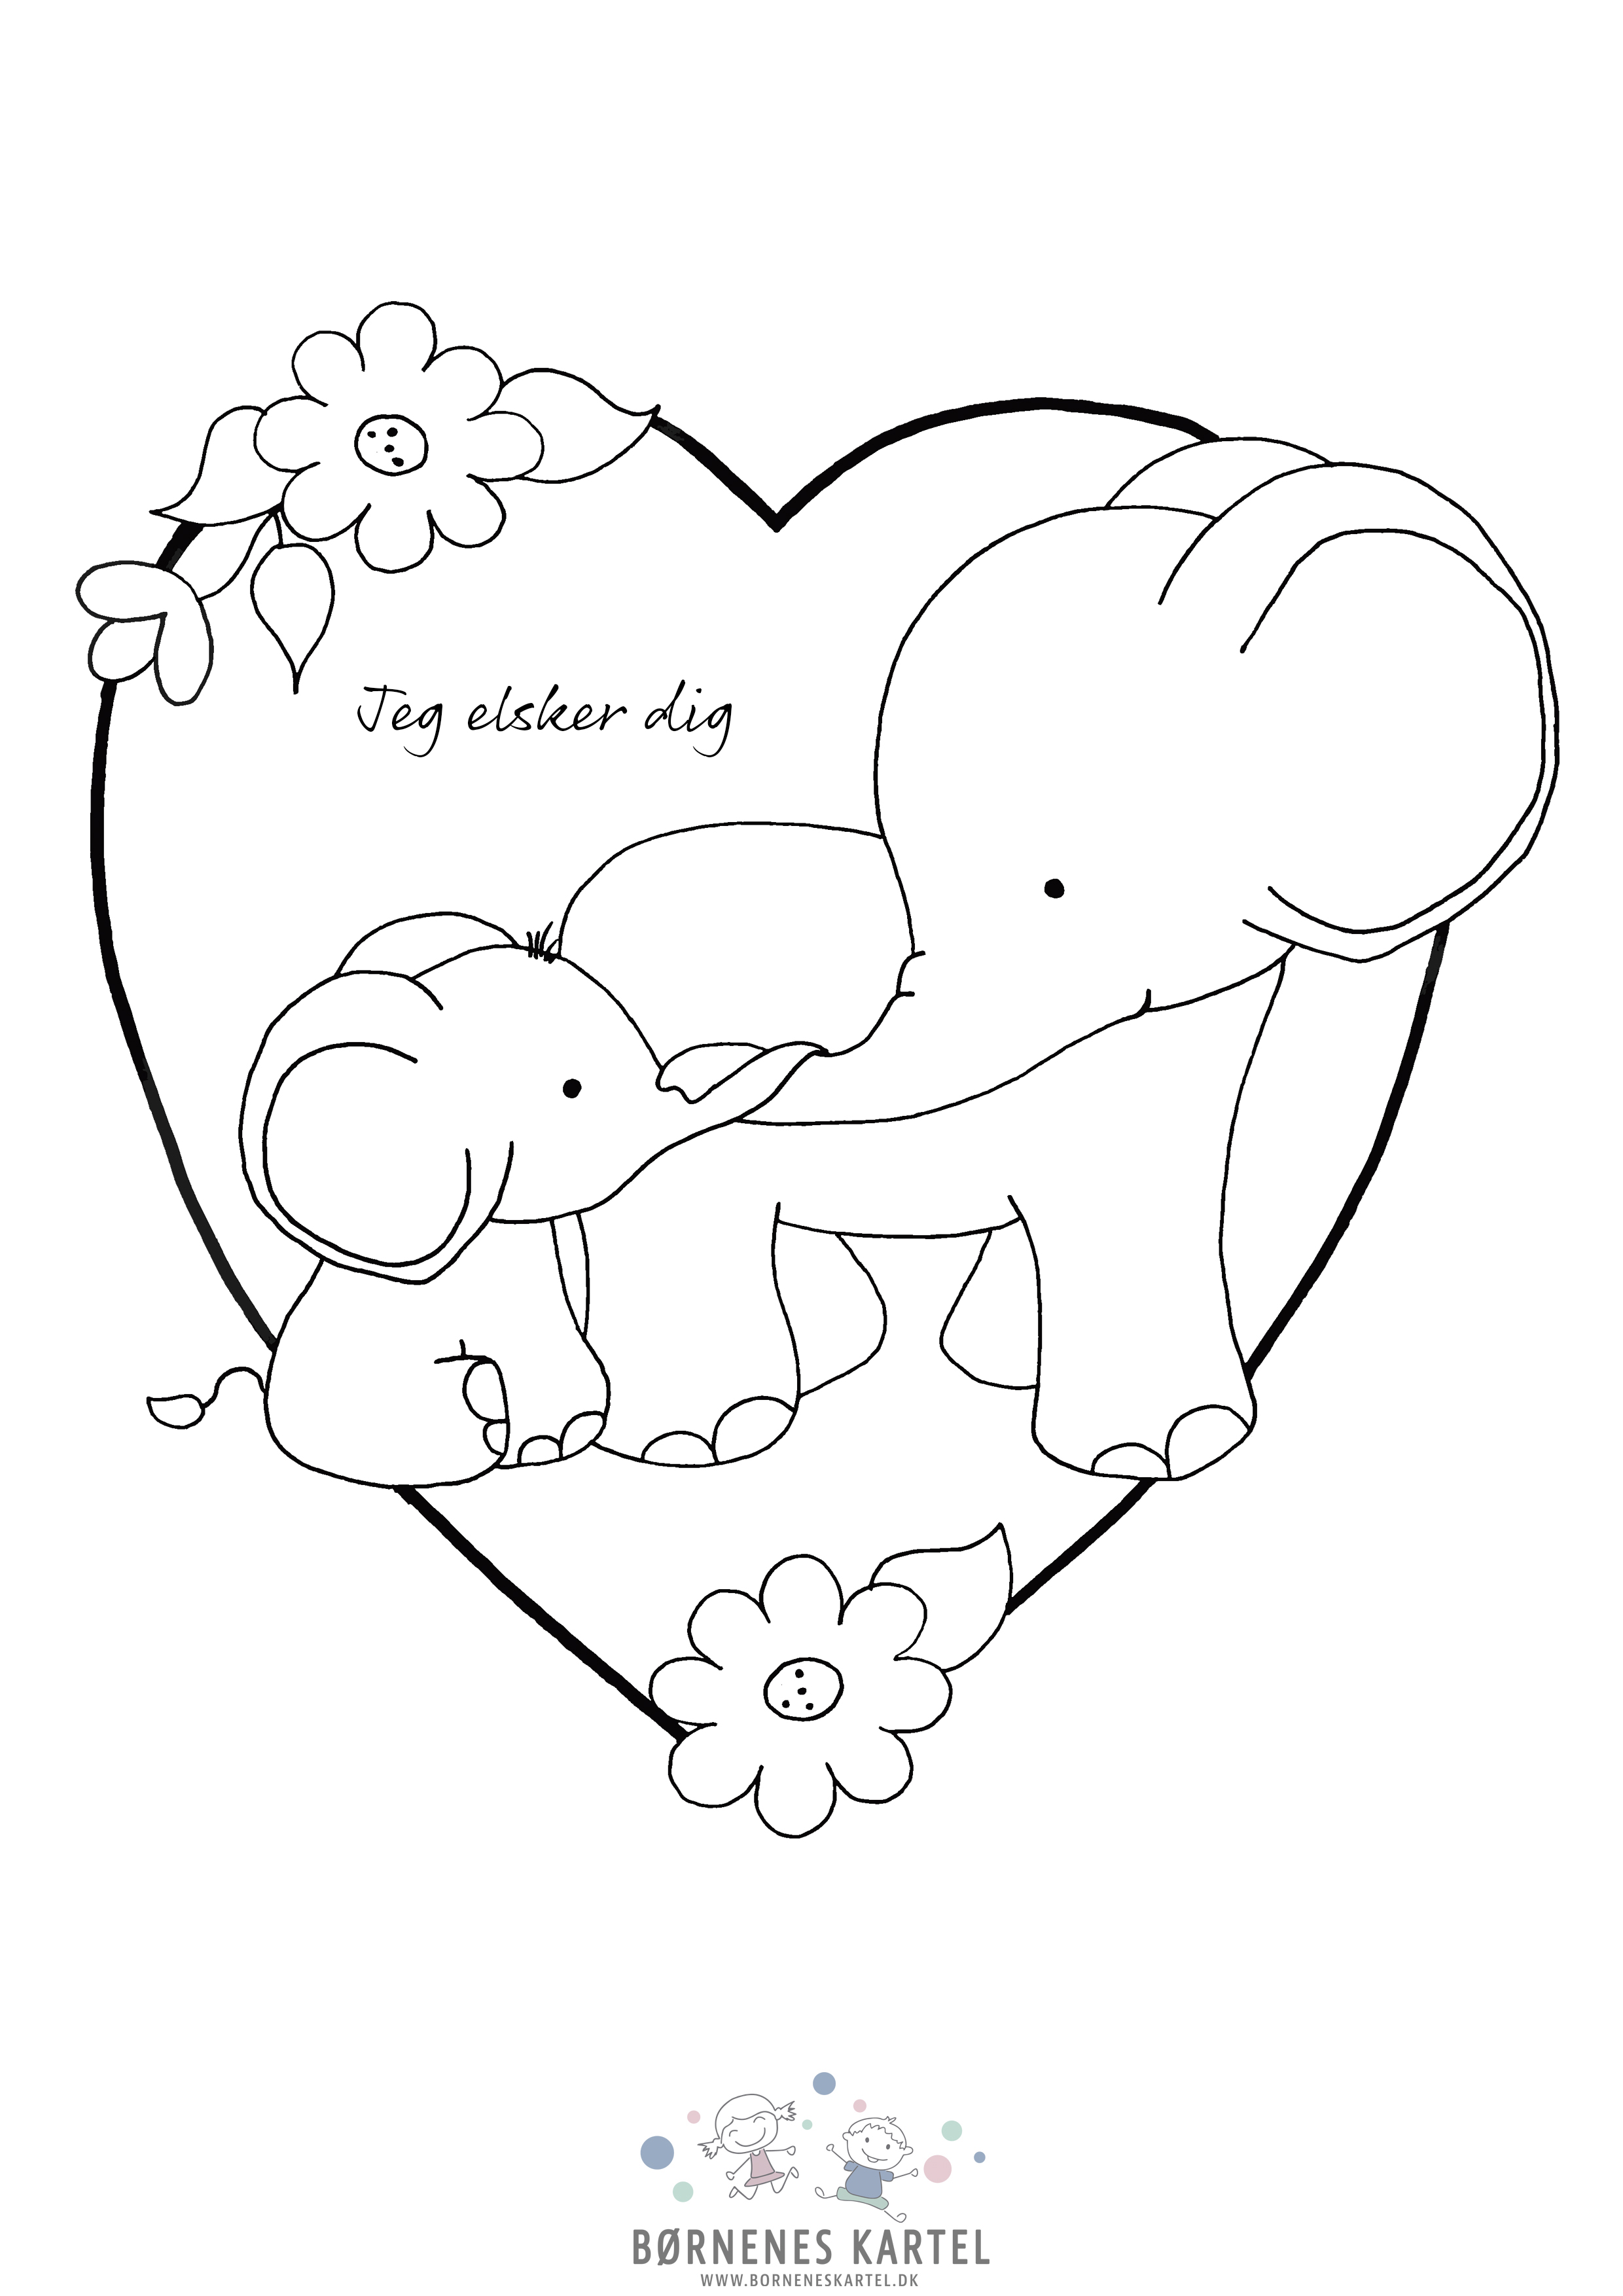 PRINT SELV Elefanter jeg elsker dig - Print selv tegninger - Børneneskartel.dk